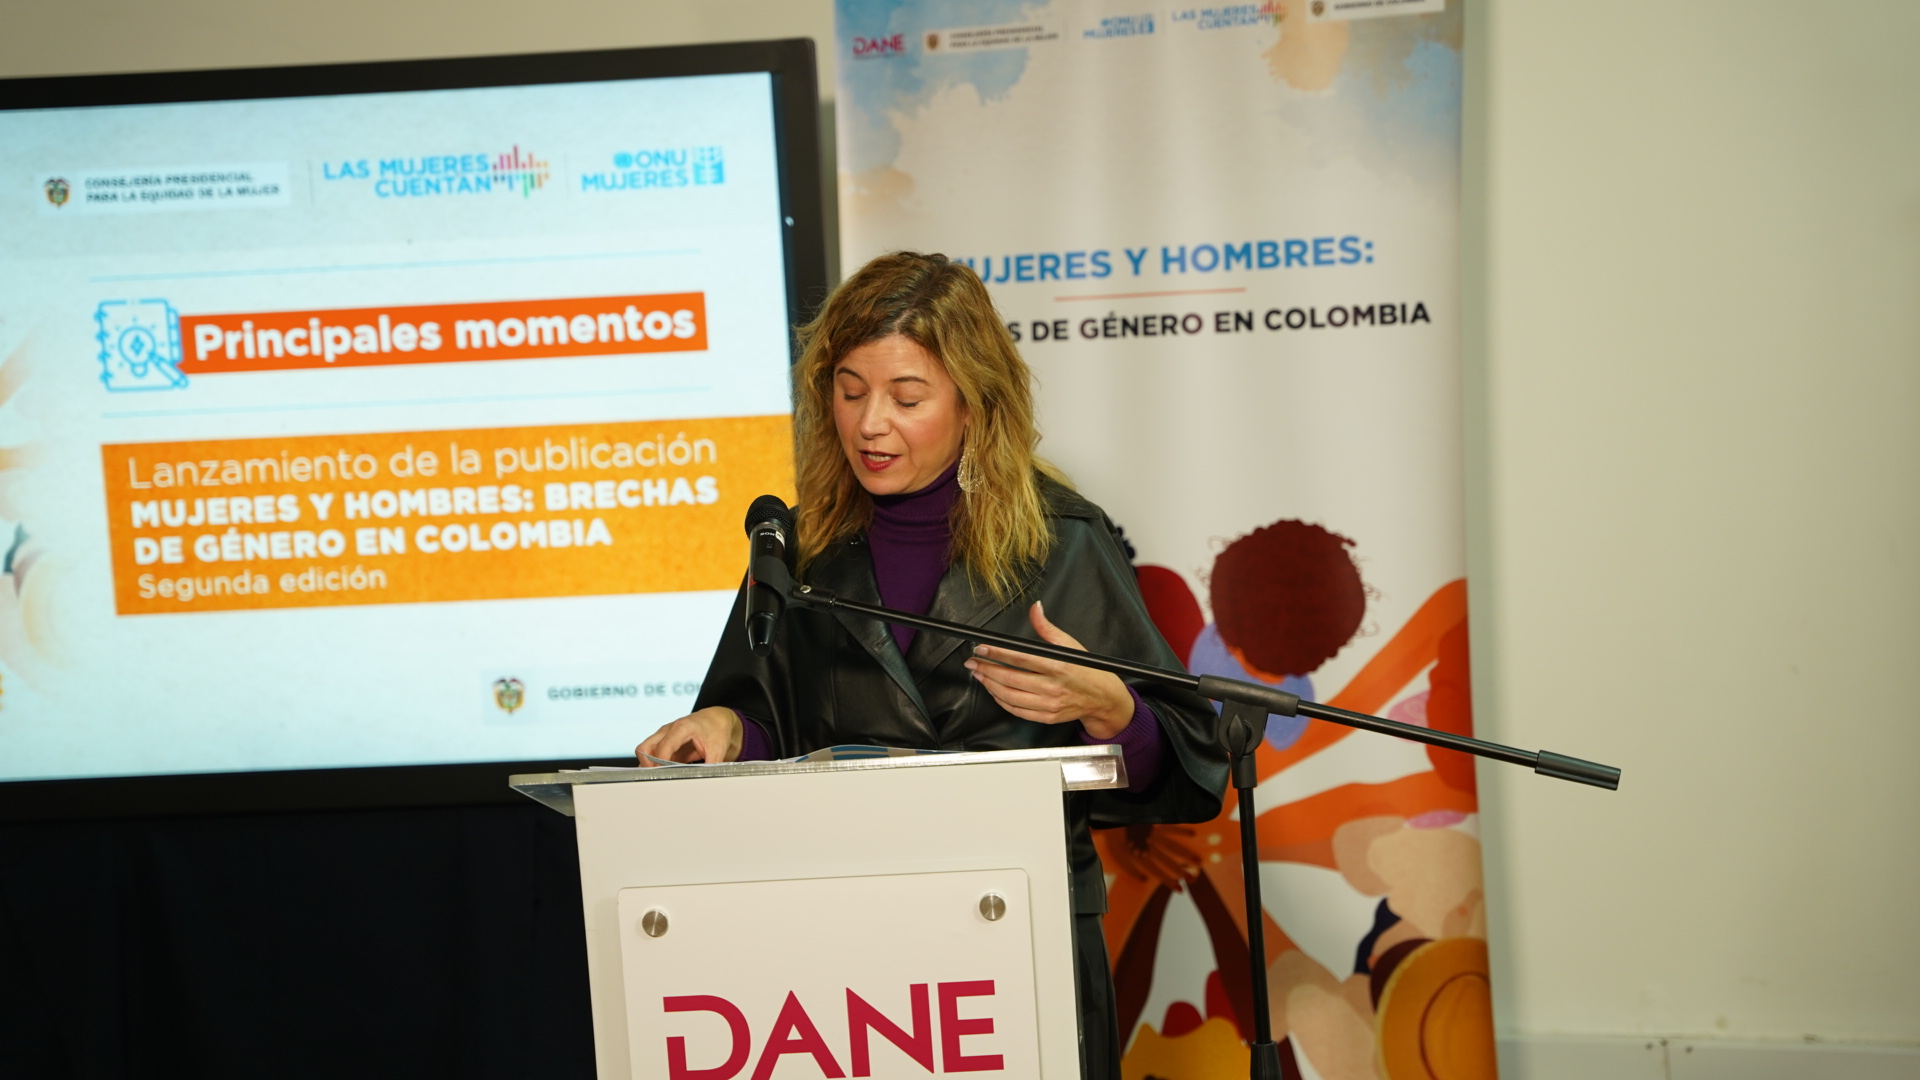 Mujeres y hombres: brechas de género en Colombia